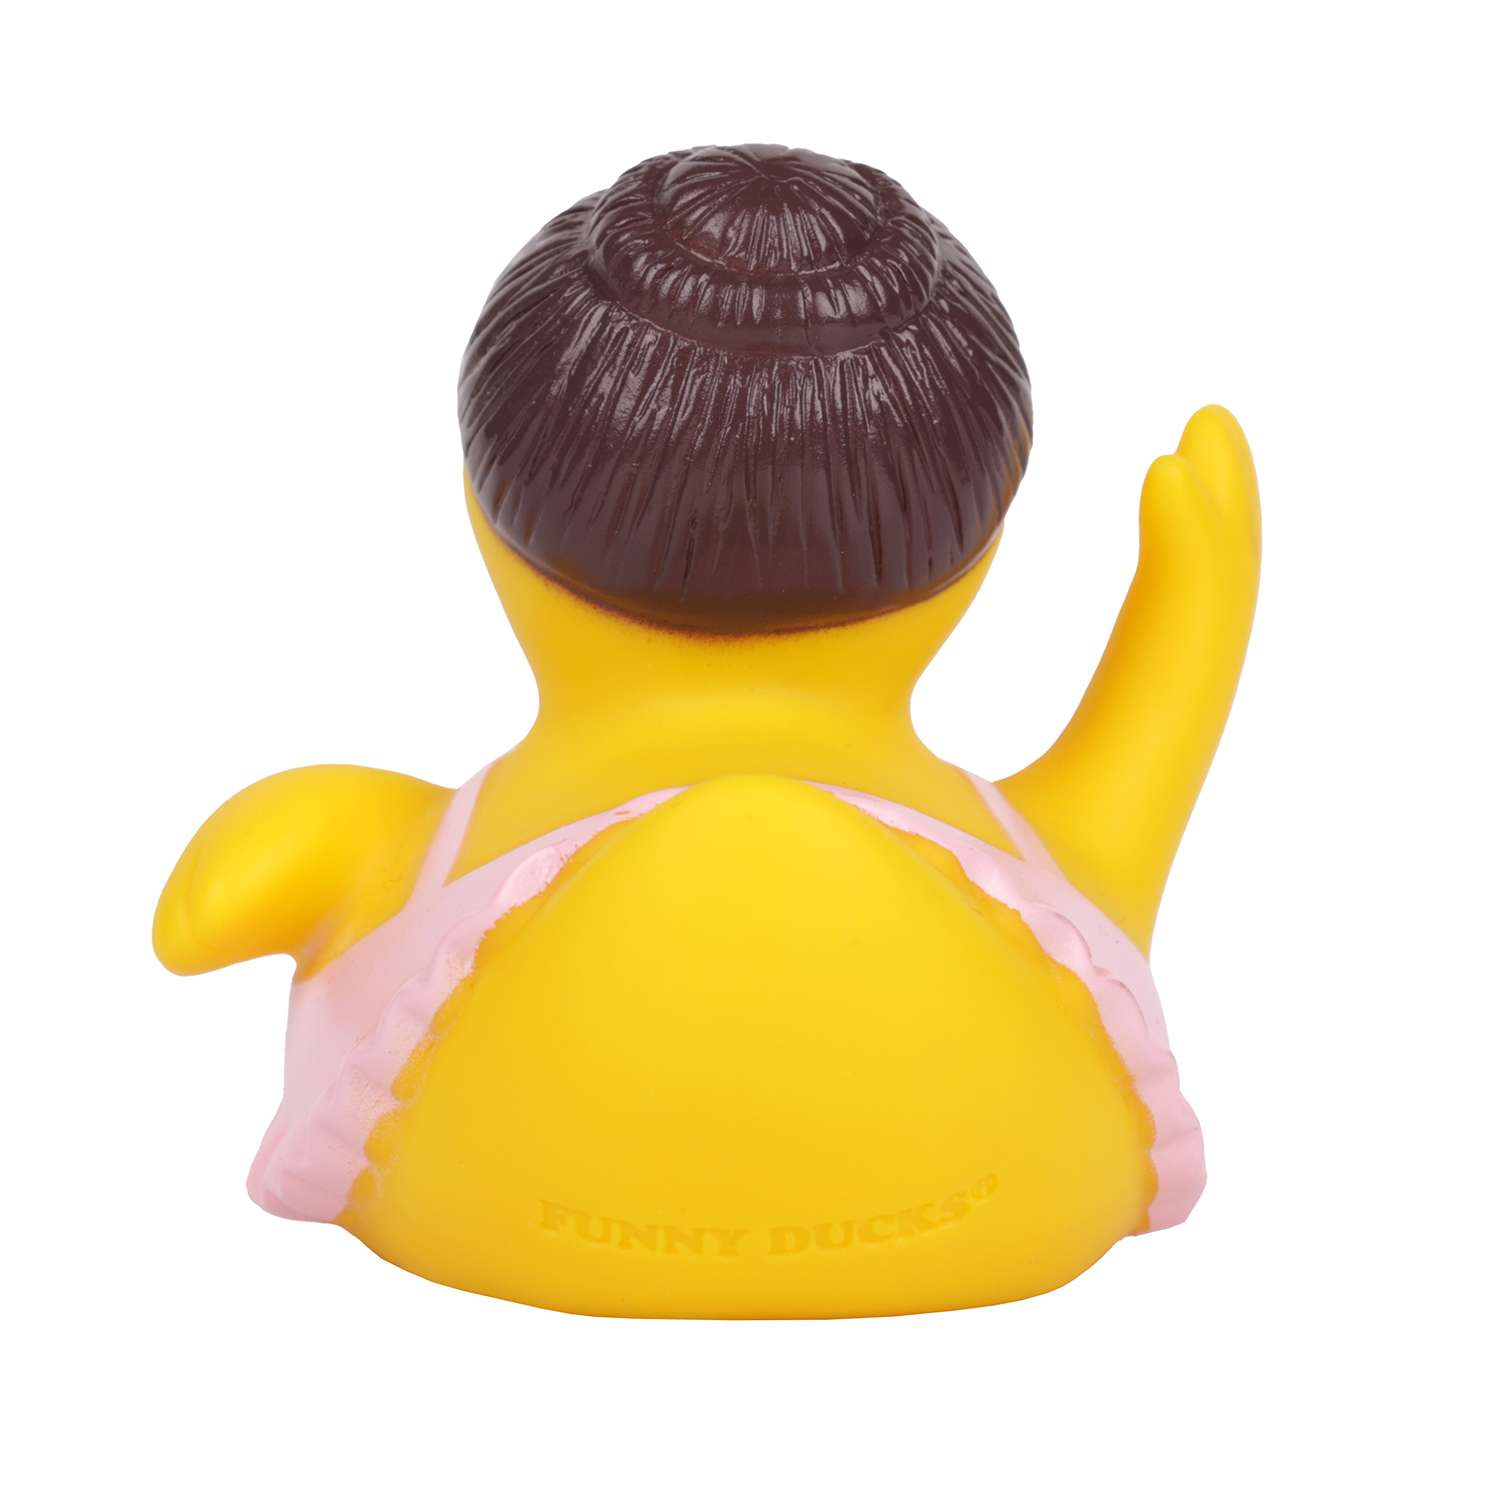 Игрушка для ванны сувенир Funny ducks Балерина уточка 1311 - фото 5